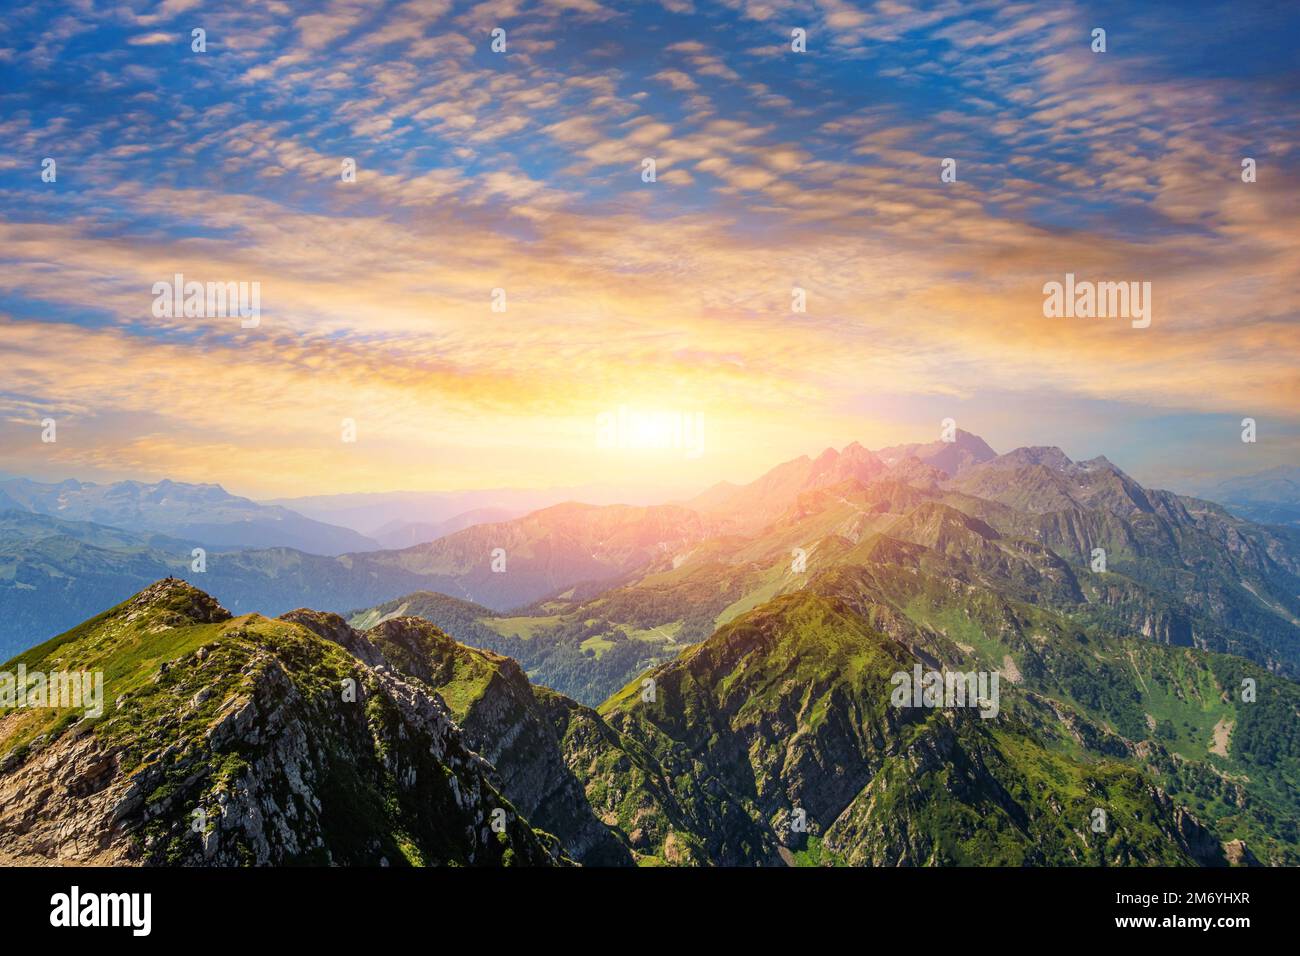 Panorama de una cadena montañosa con prados alpinos durante la puesta del sol con hermoso cielo nublado Foto de stock